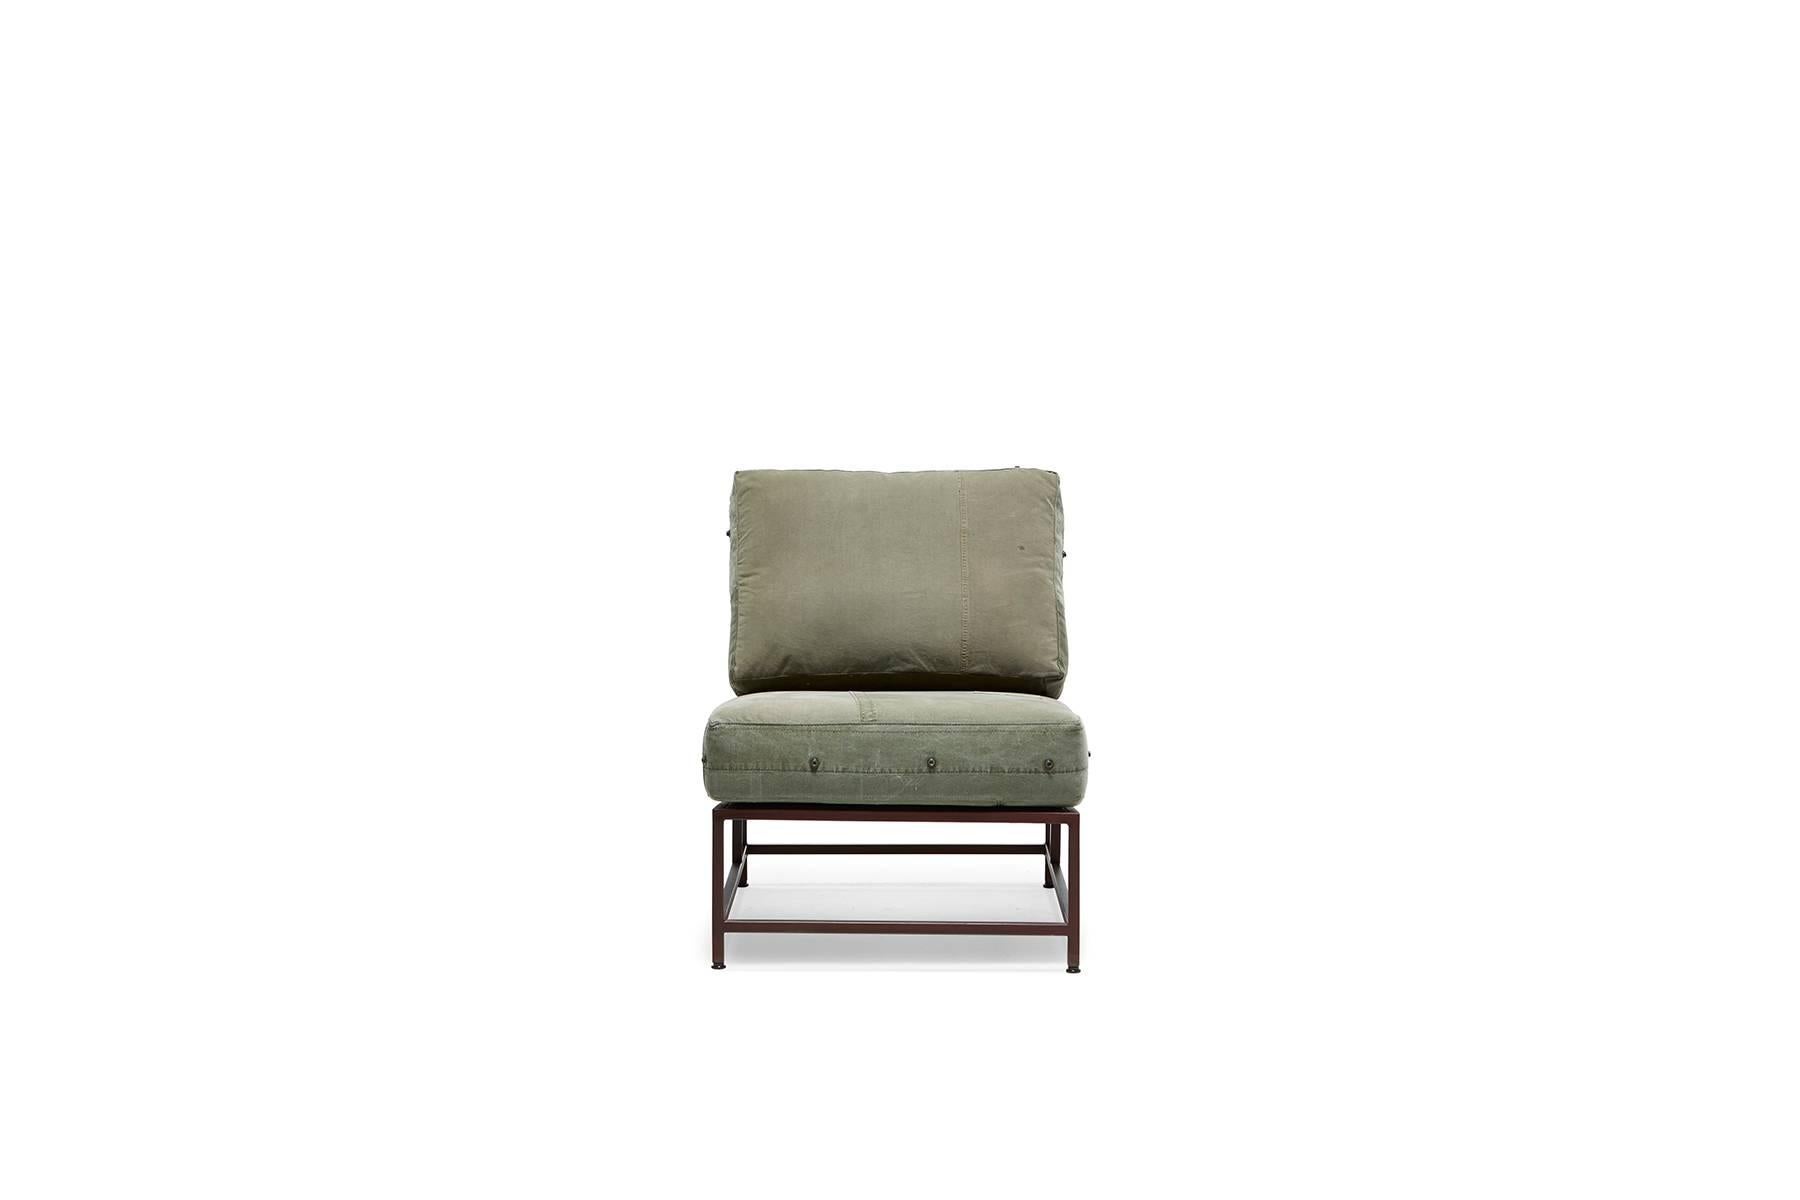 Dies ist die ursprüngliche Version des Inheritance-Stuhls aus dem Jahr 2011. Inspiriert von der inhärenten Geschichte der alten US-Armee-Materialien, gepaart mit einem minimalen, reduzierten Designkonzept, ist dies die erste Möbelkollektion, die